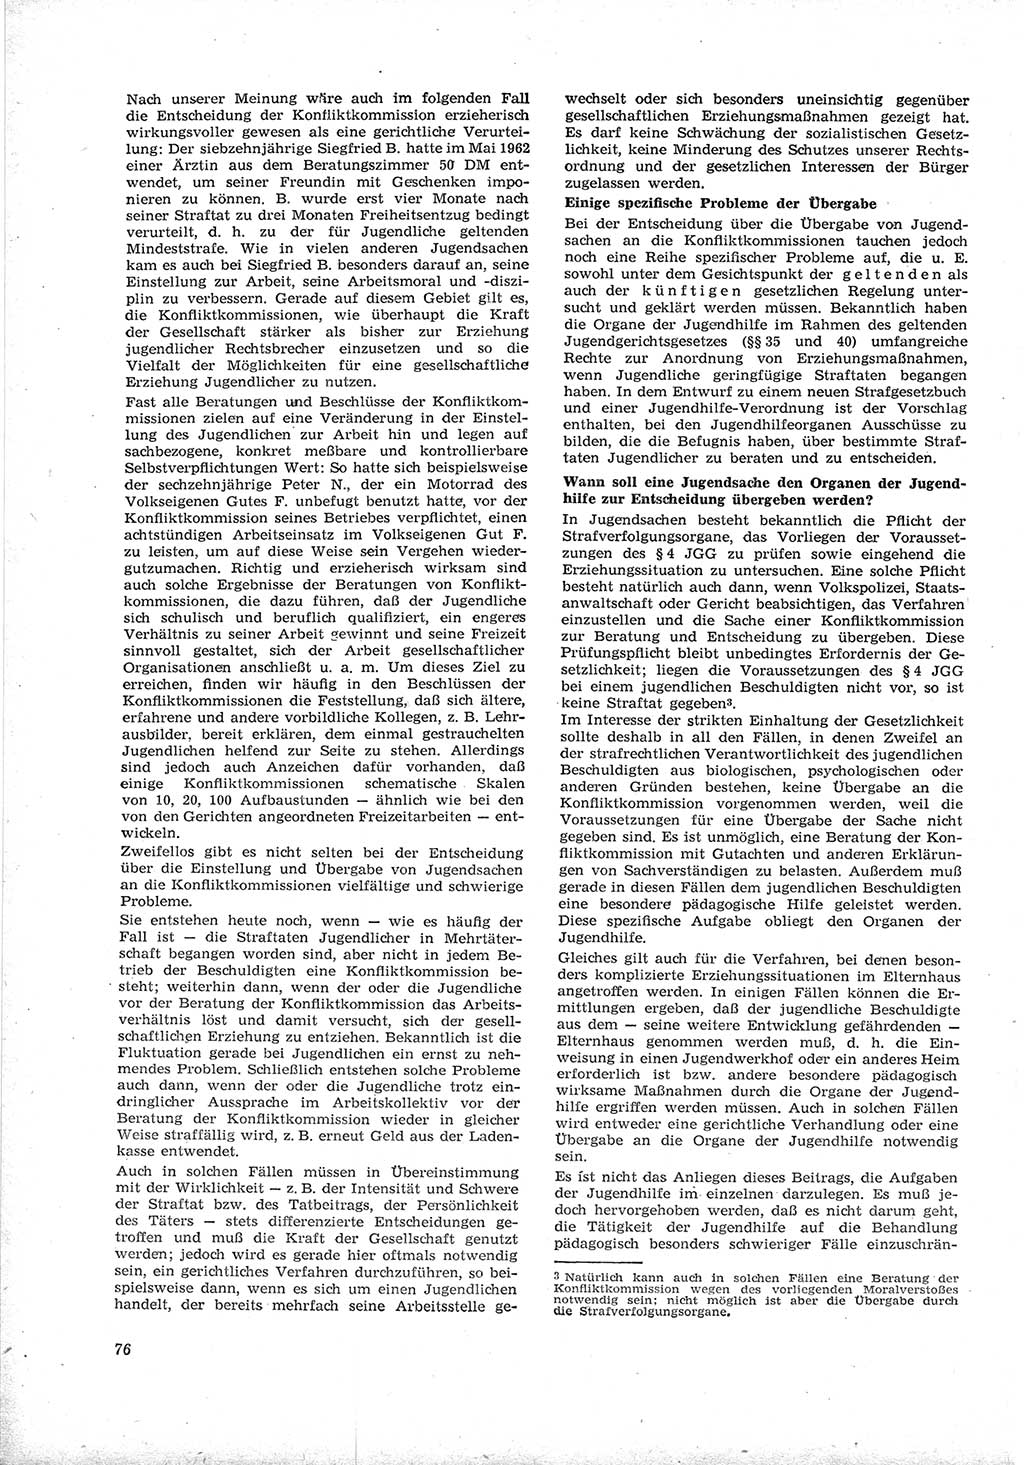 Neue Justiz (NJ), Zeitschrift für Recht und Rechtswissenschaft [Deutsche Demokratische Republik (DDR)], 17. Jahrgang 1963, Seite 76 (NJ DDR 1963, S. 76)